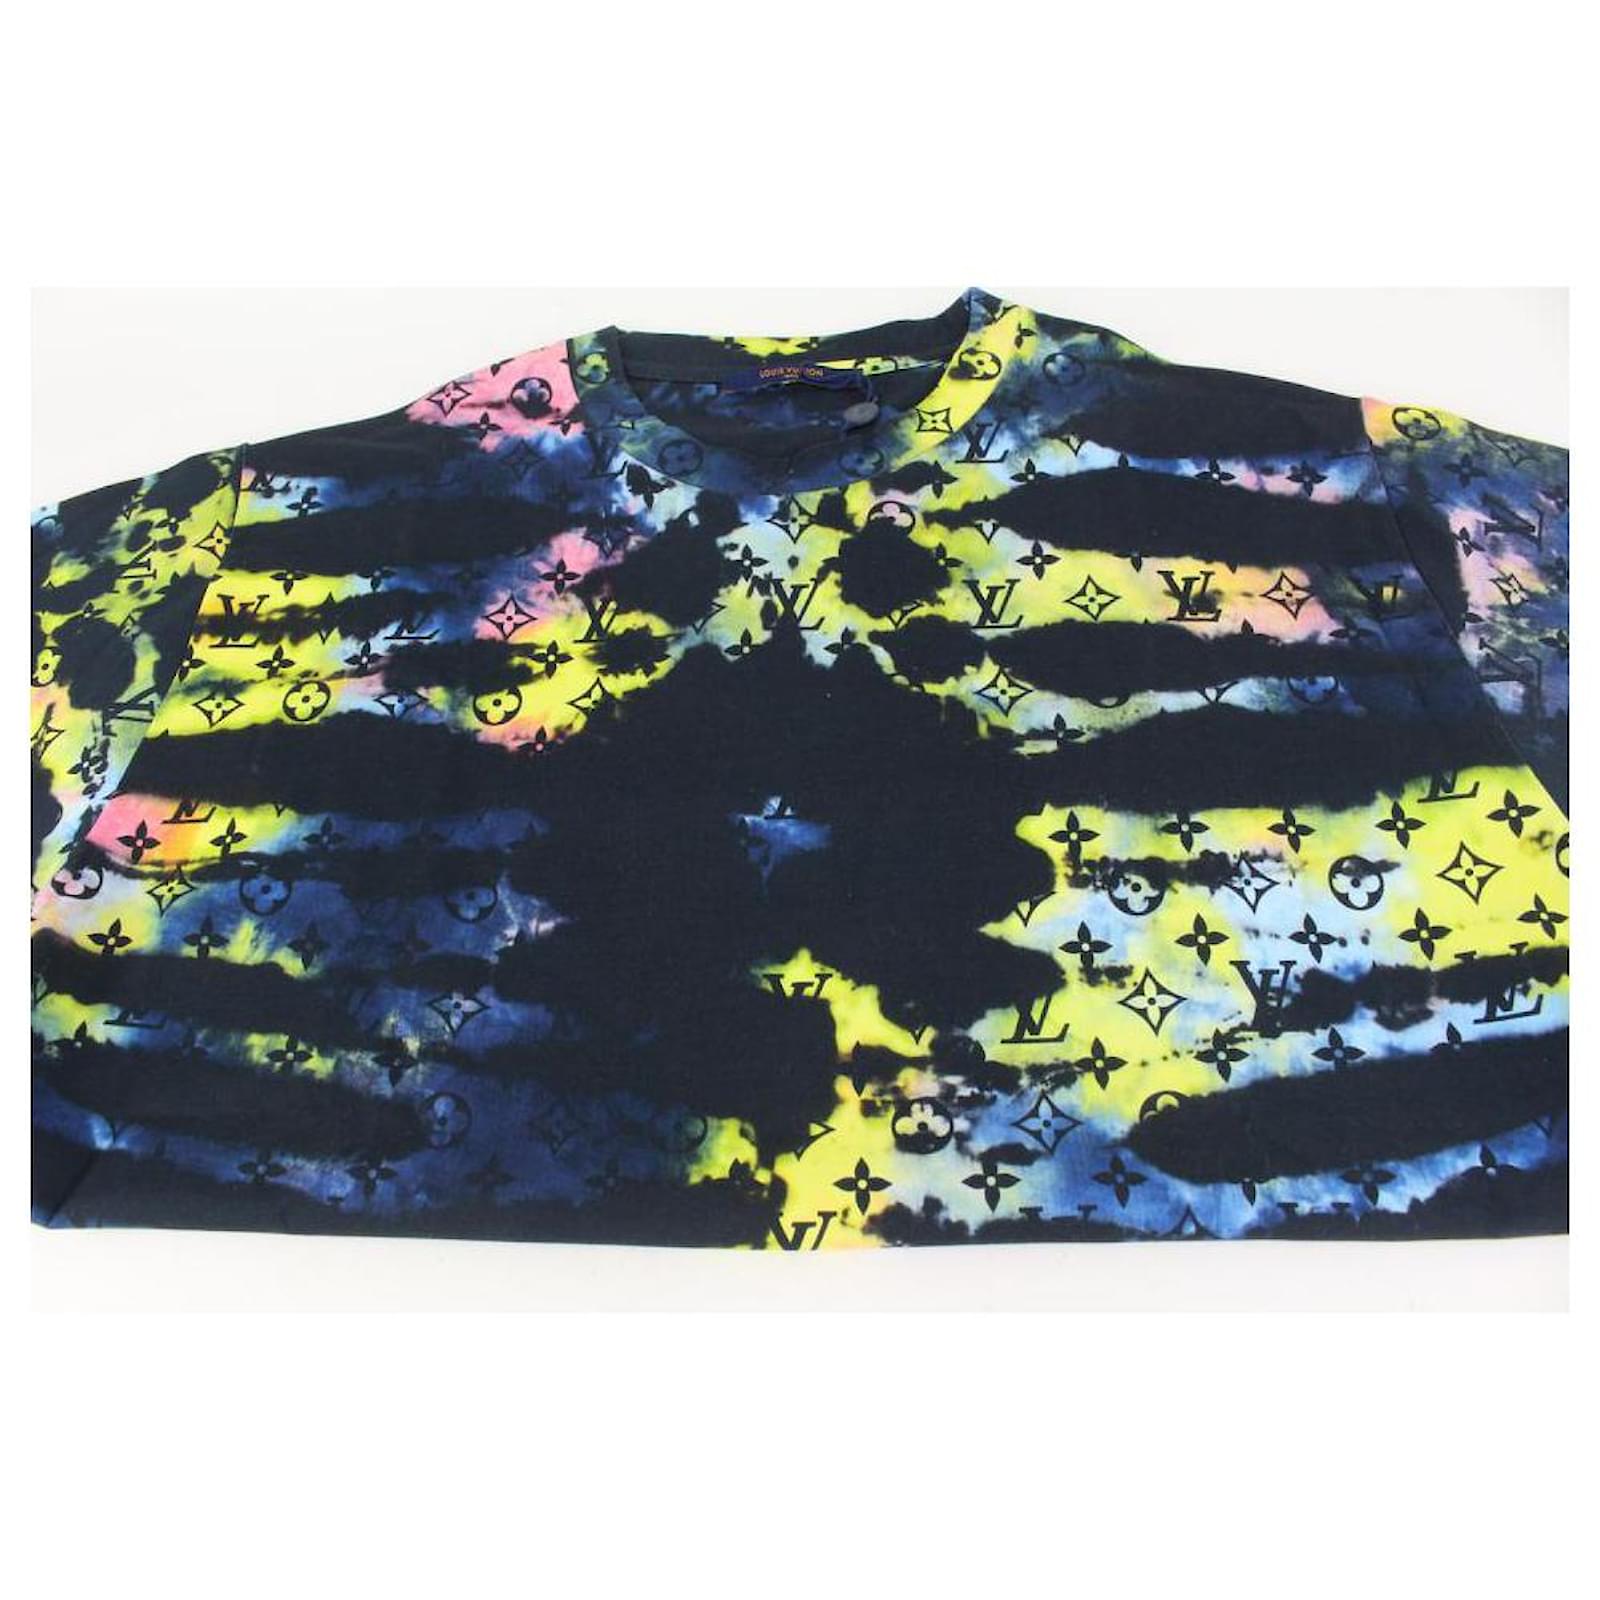 Louis Vuitton Cloud Blue T Shirt – Cheap Willardmarine Jordan outlet